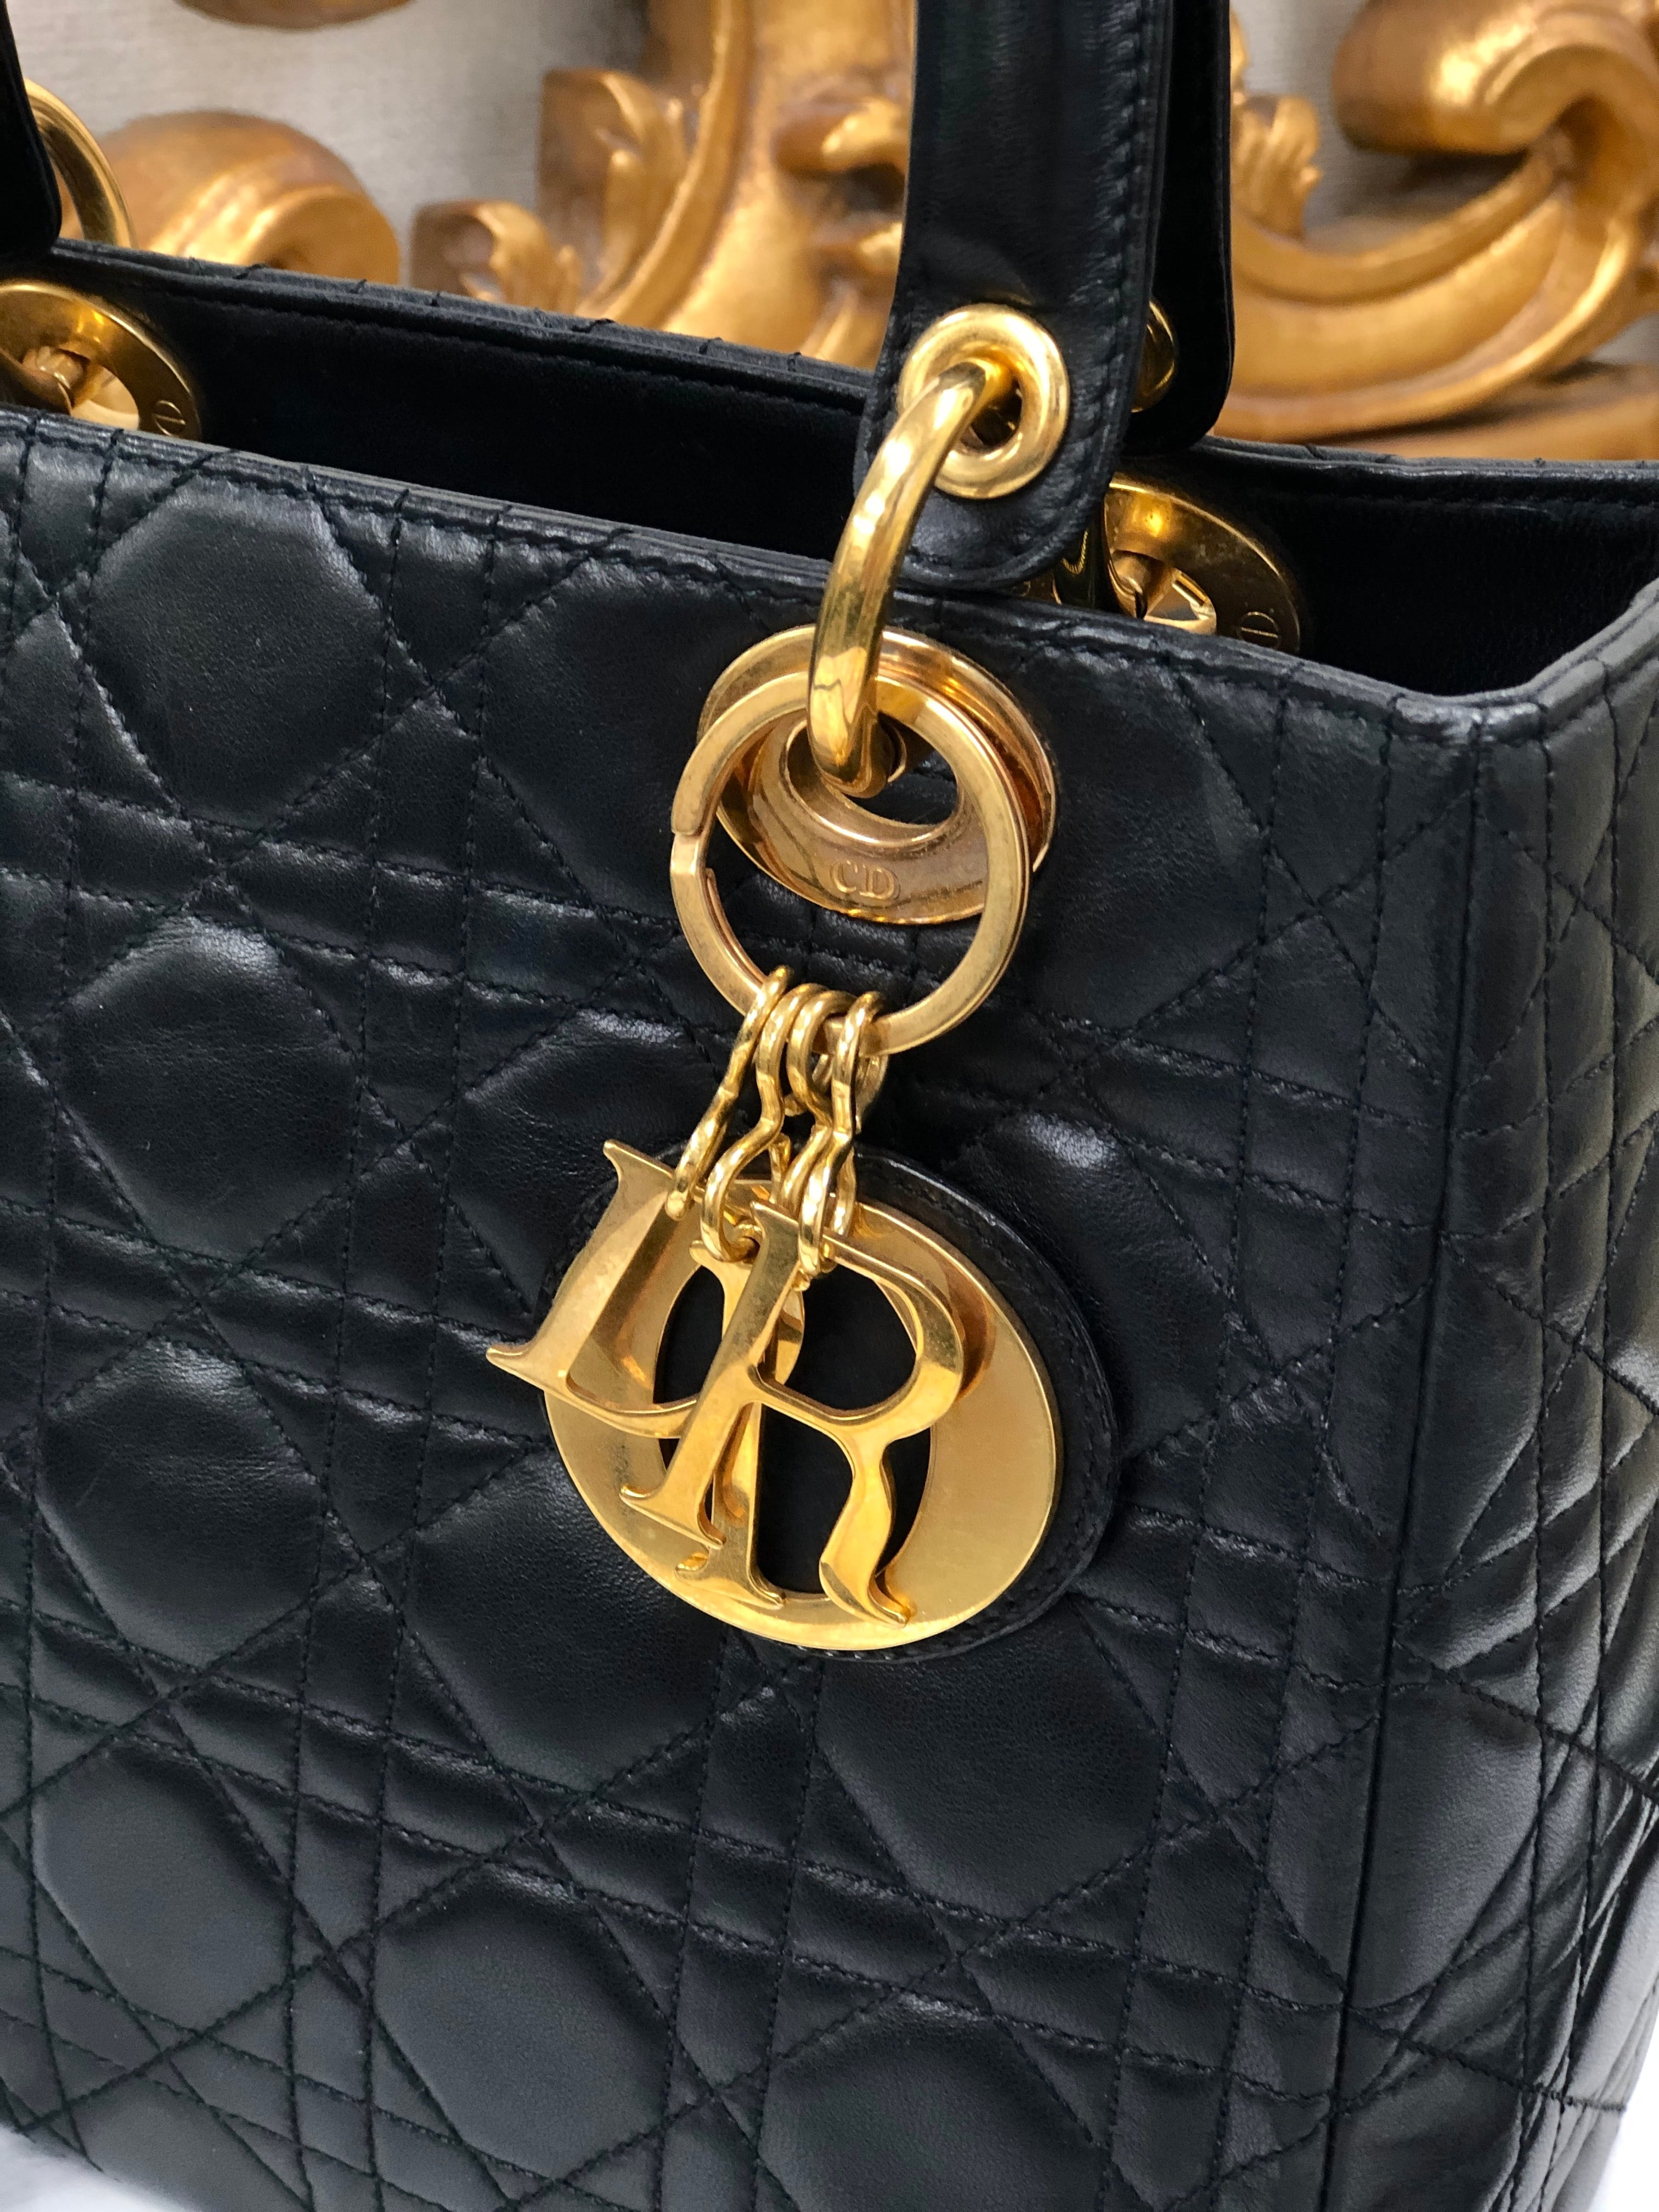 クリスチャンディオール 2WAYバッグ レディディオール カナージュ  ブラック レザー Christian Dior  | ハンドバッグ ショルダーバッグ 肩掛け レディース ファッション 黒 ゴールド金具 女性 鞄 ブランド Bランク